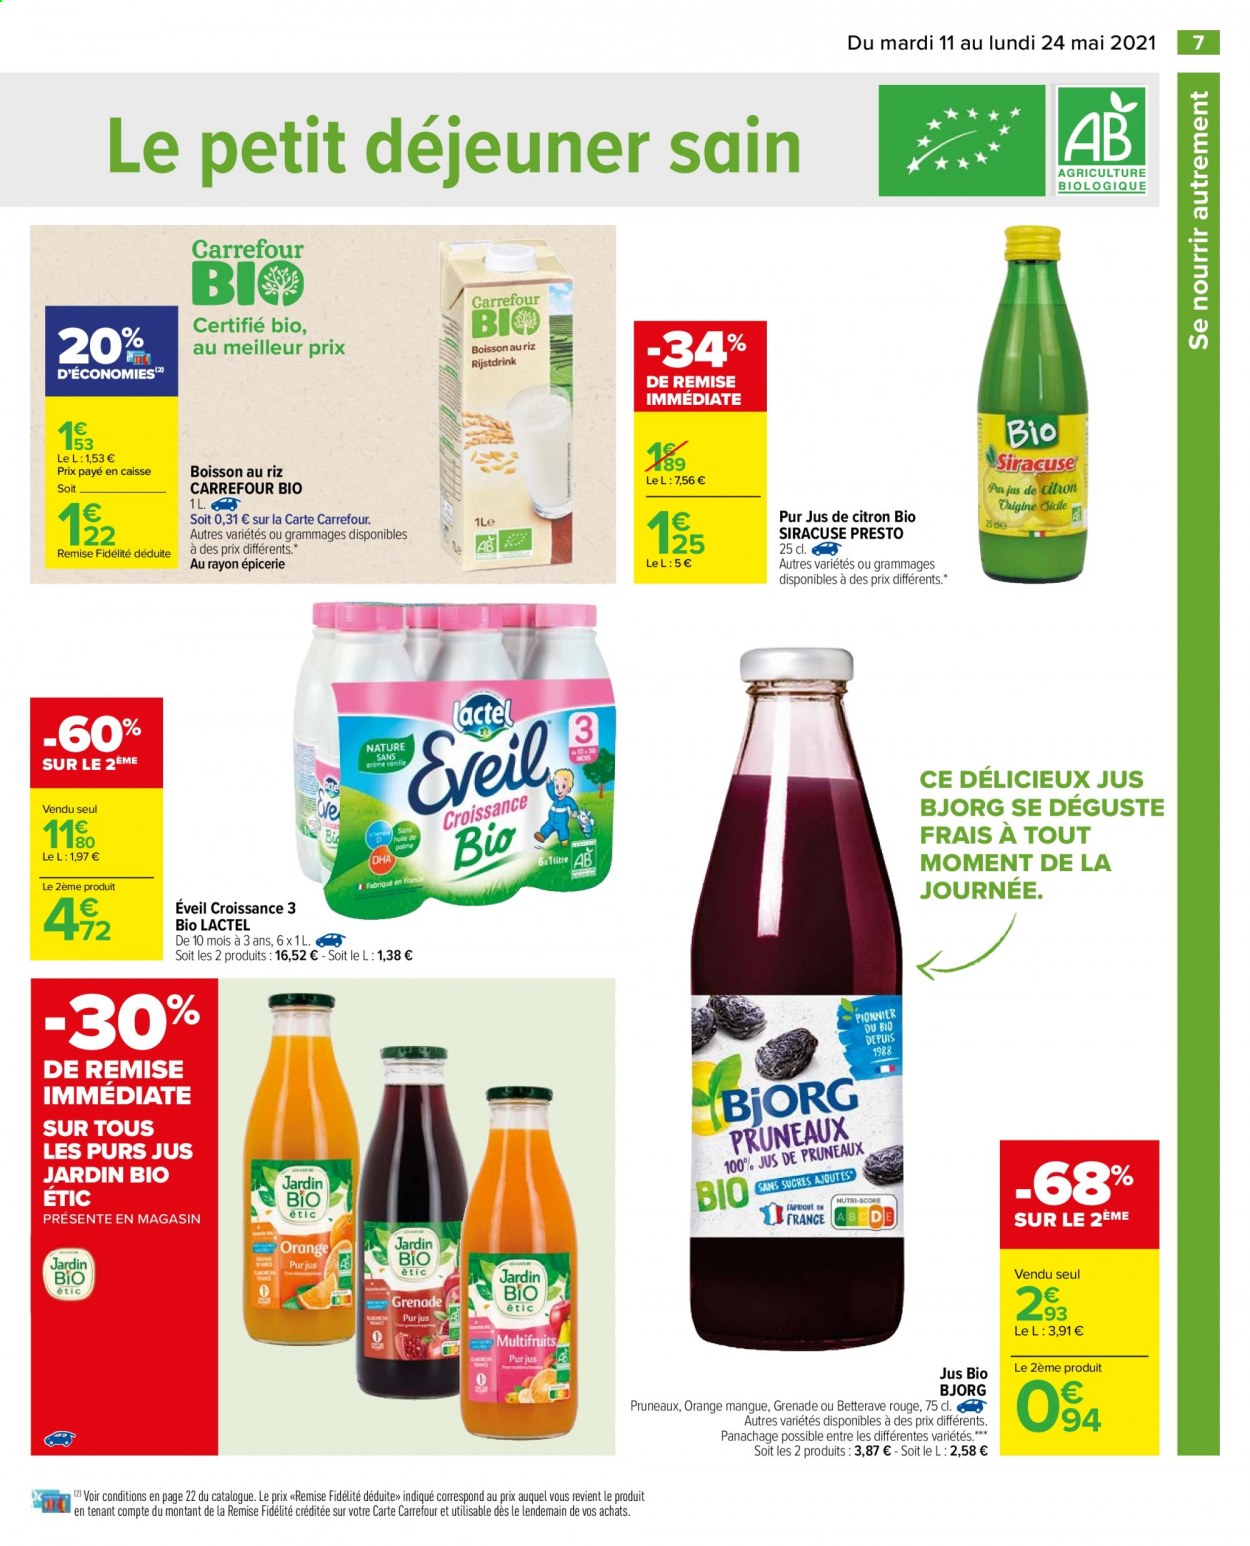 thumbnail - Catalogue Carrefour Hypermarchés - 11/05/2021 - 24/05/2021 - Produits soldés - betterave, Jardin BIO, Bjorg, Lactel, pur jus. Page 8.